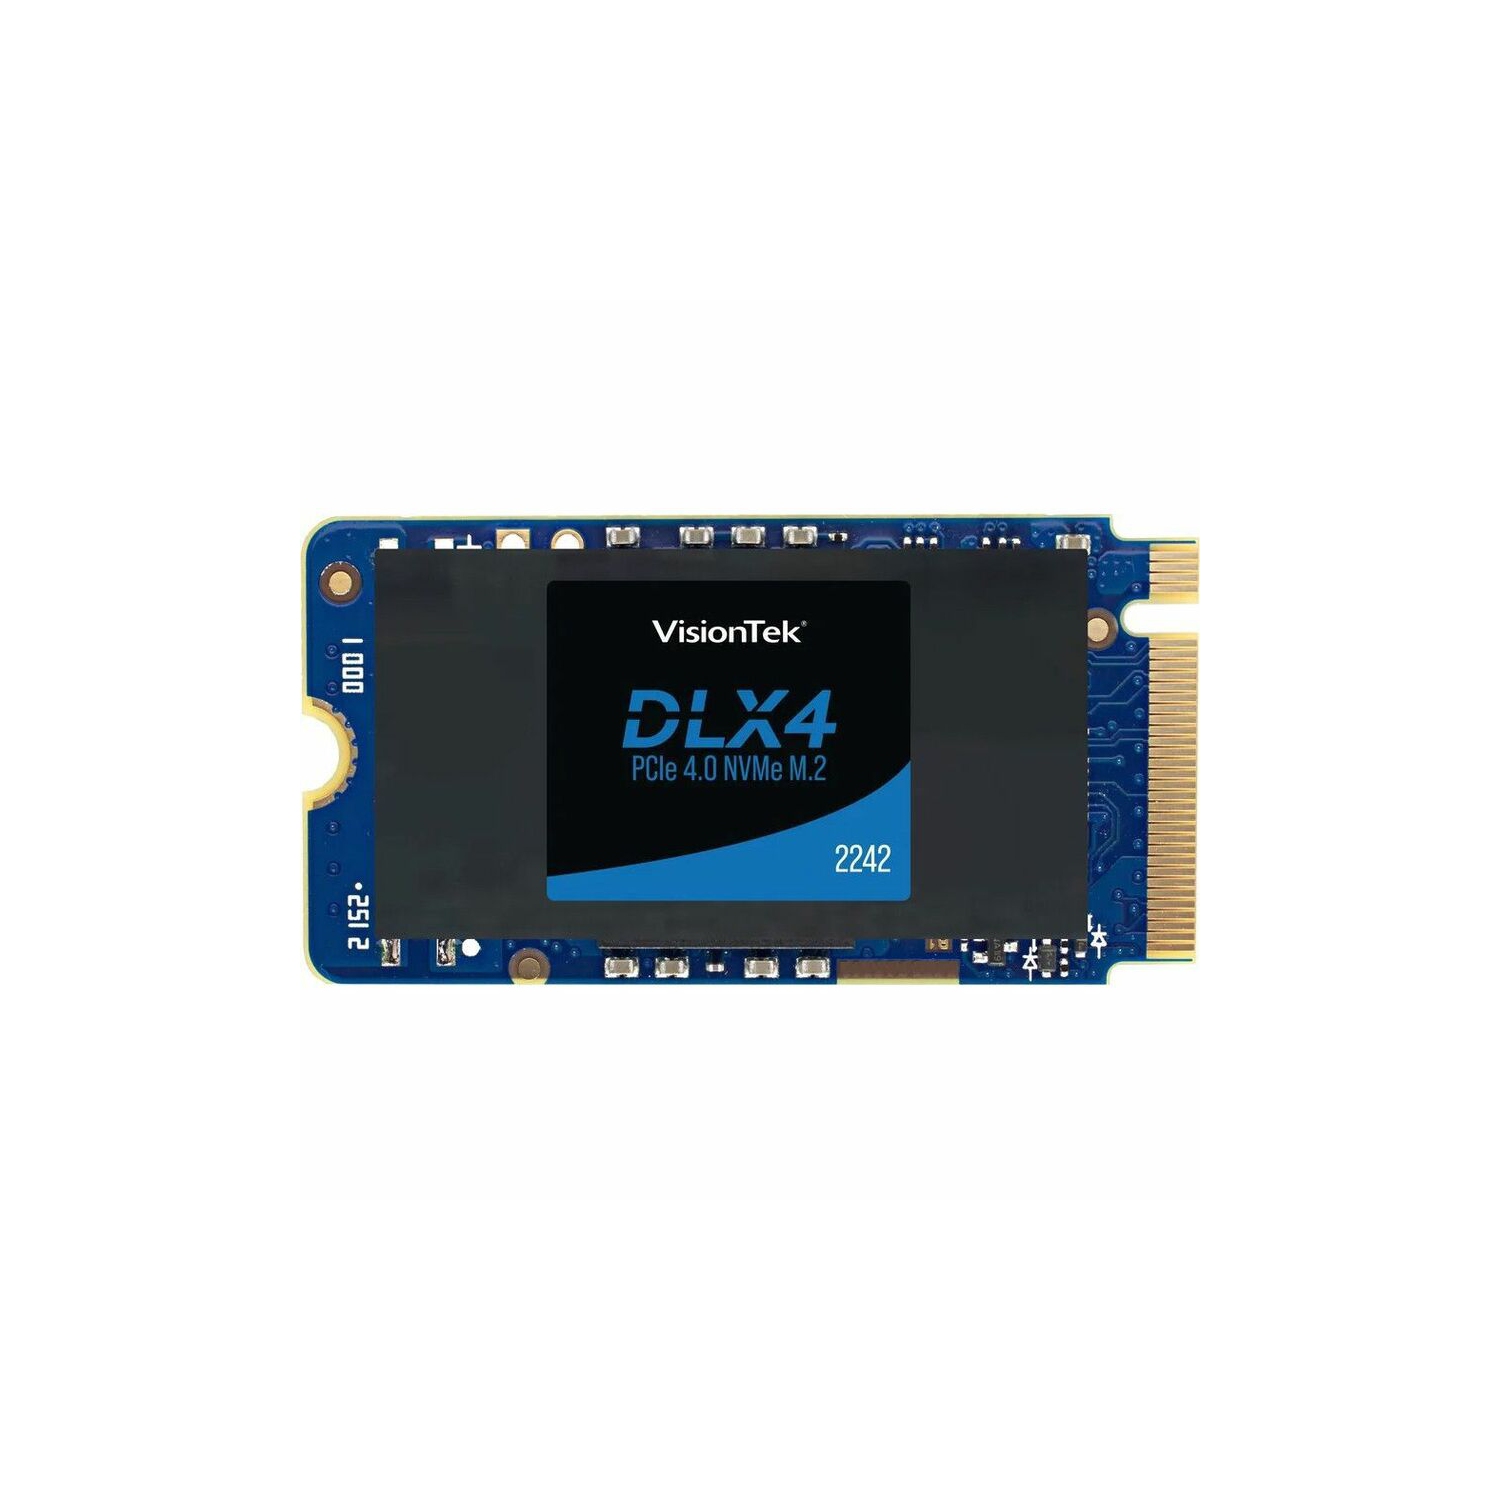 最新情報 VisionTek with DLX4 the 2TB reliable 2 ultra-fast